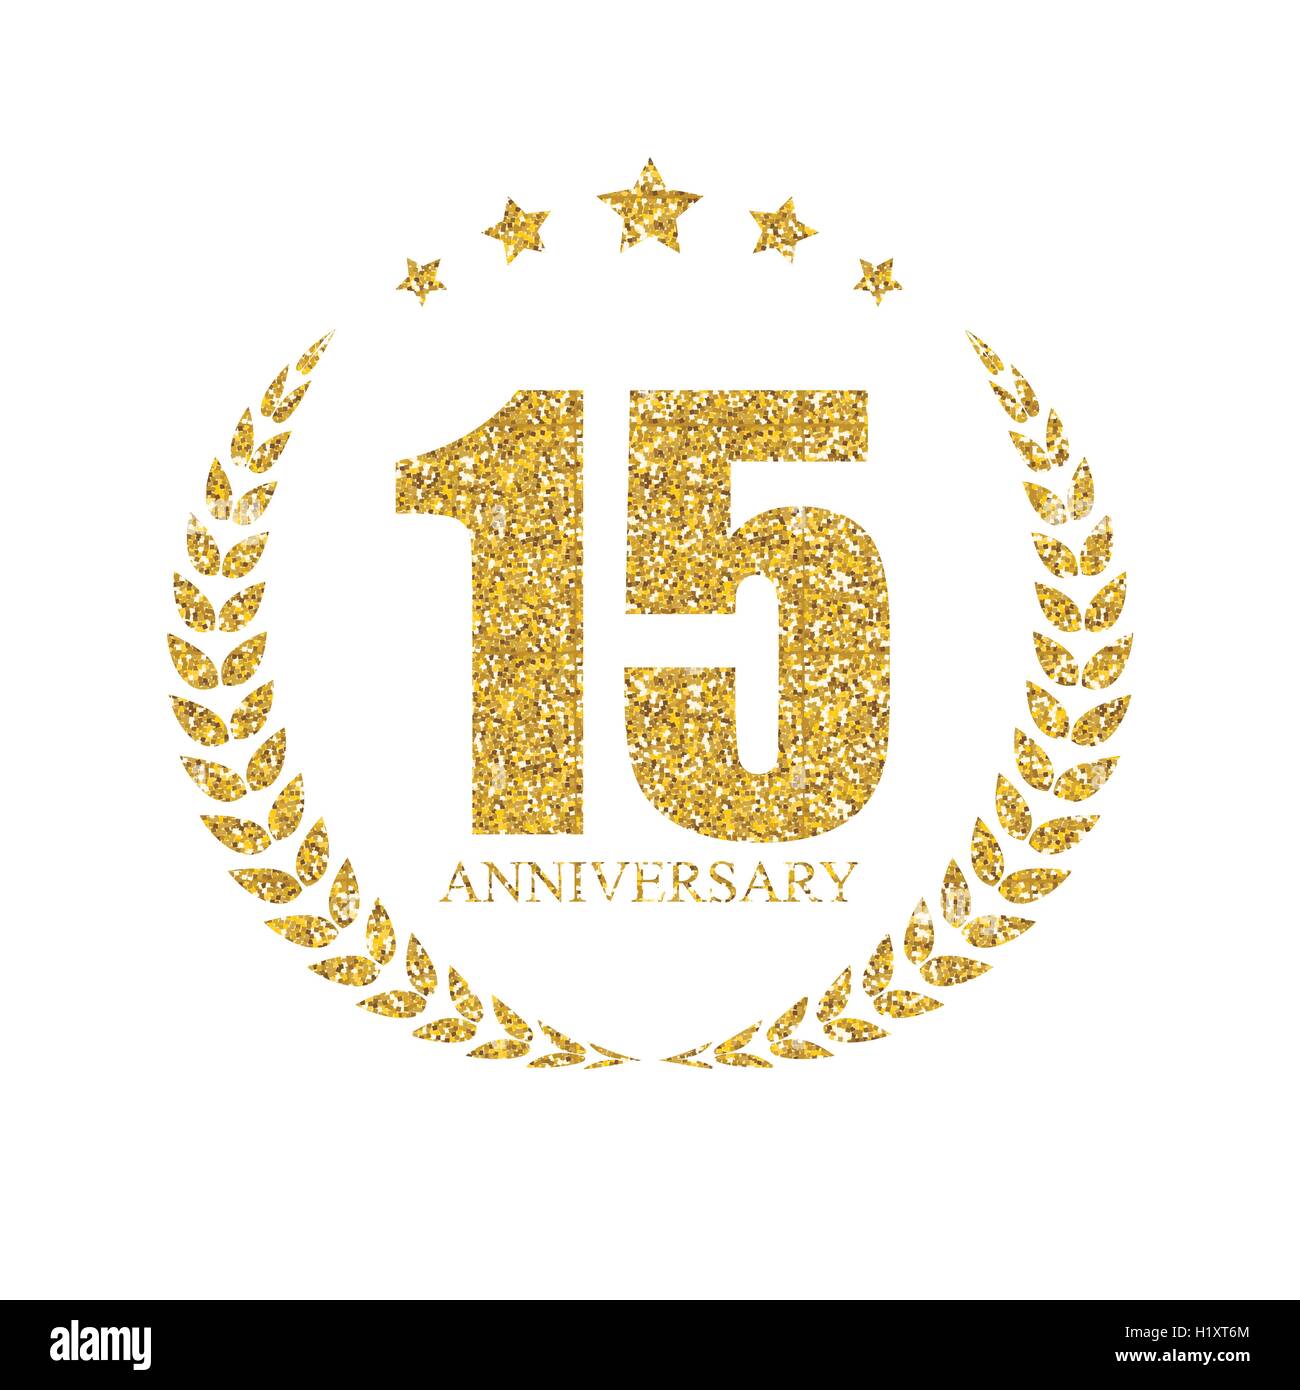 15 years anniversary logo